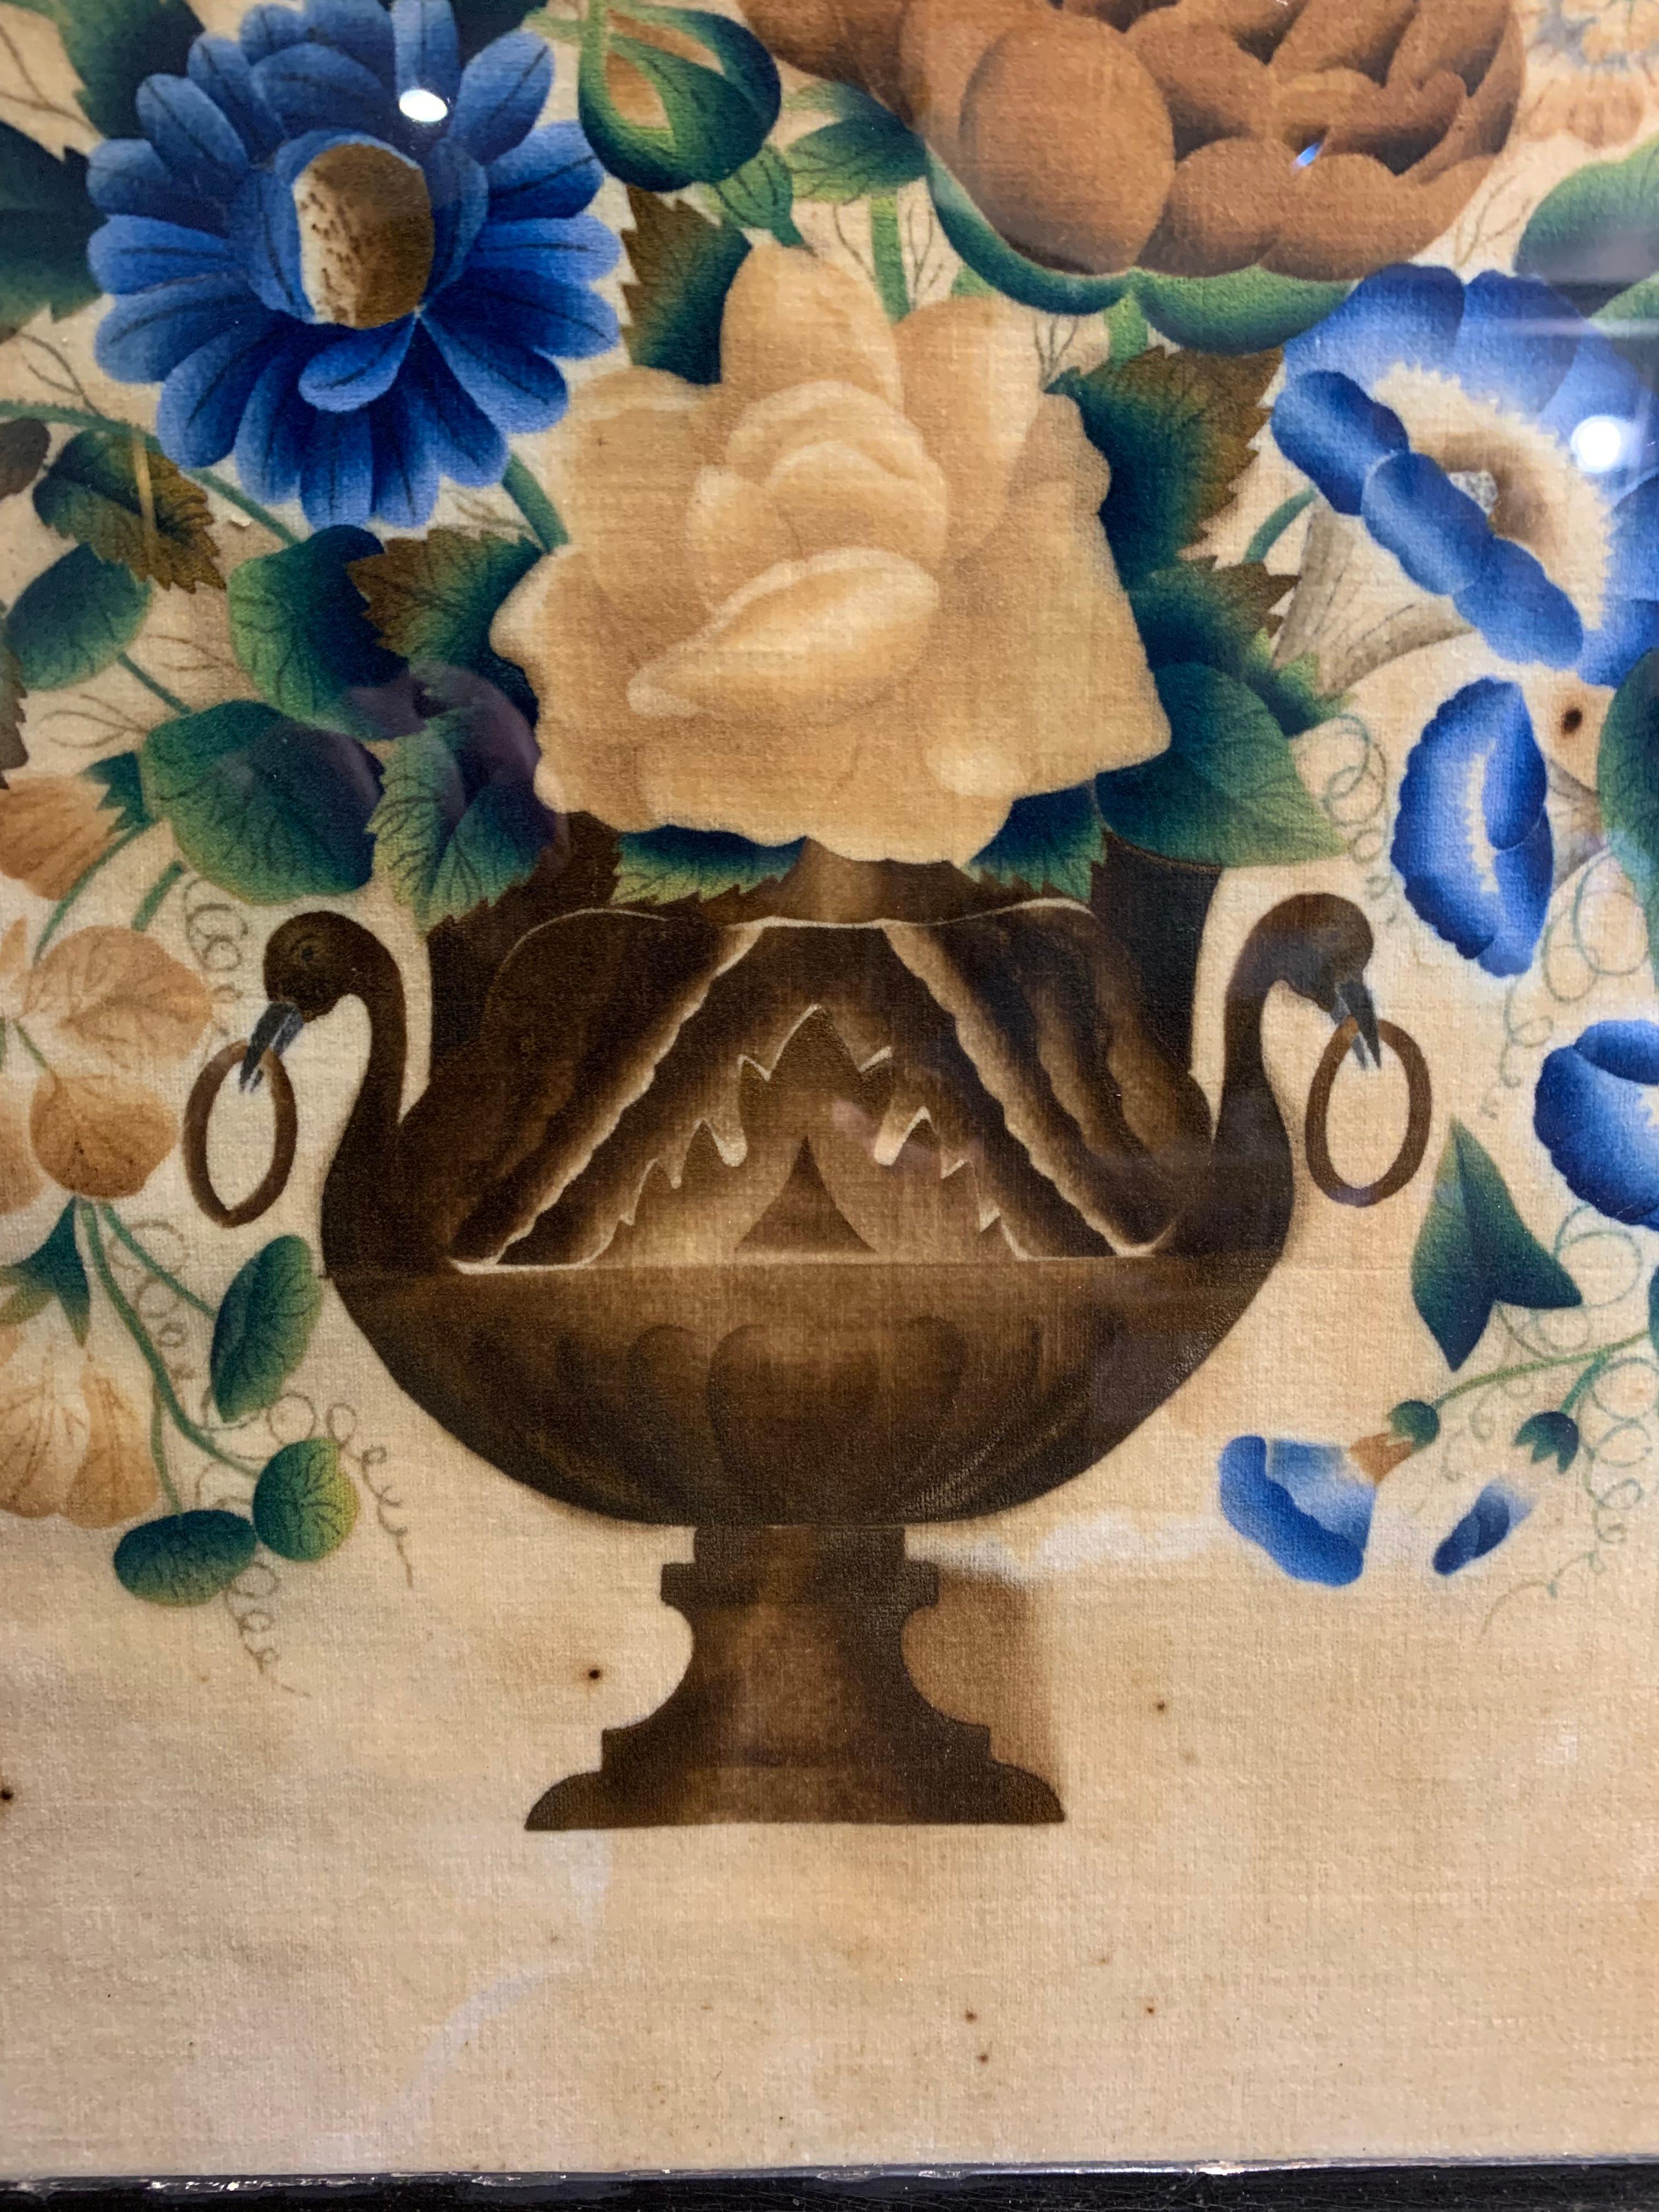 Charmante peinture française sur velours vers 1890 représentant une urne classique remplie de fleurs.
Le cadre profond est décoré et les fleurs sont dans des bleus vibrants et des couleurs sourdes.